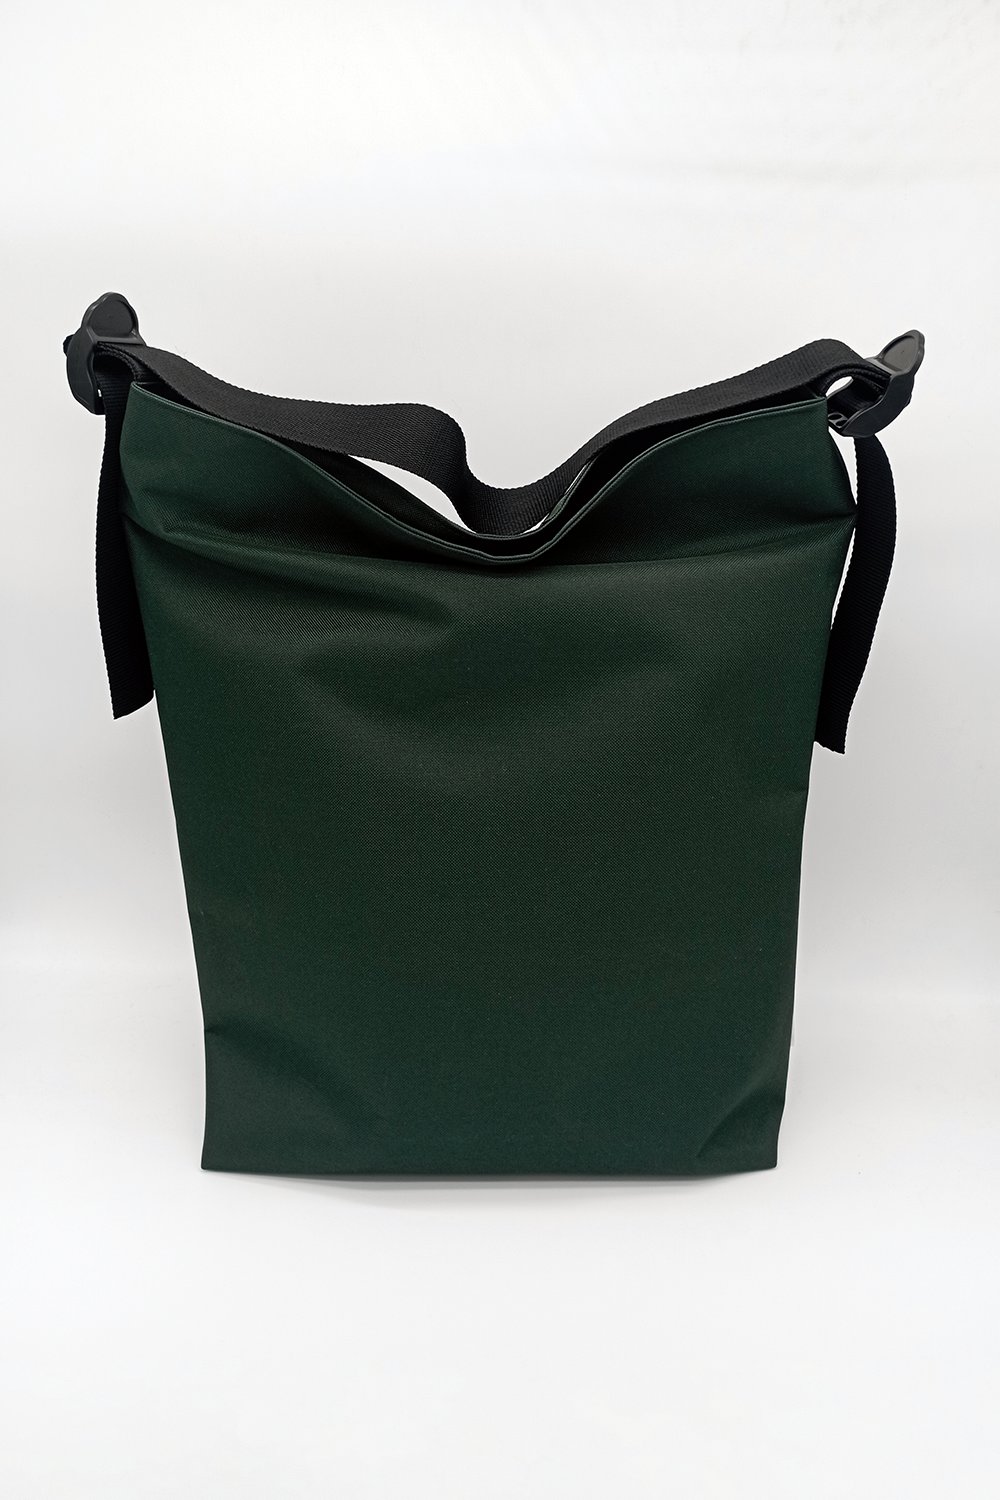 Image of ZOE - maxi borsa verde scuro sconto del 10%